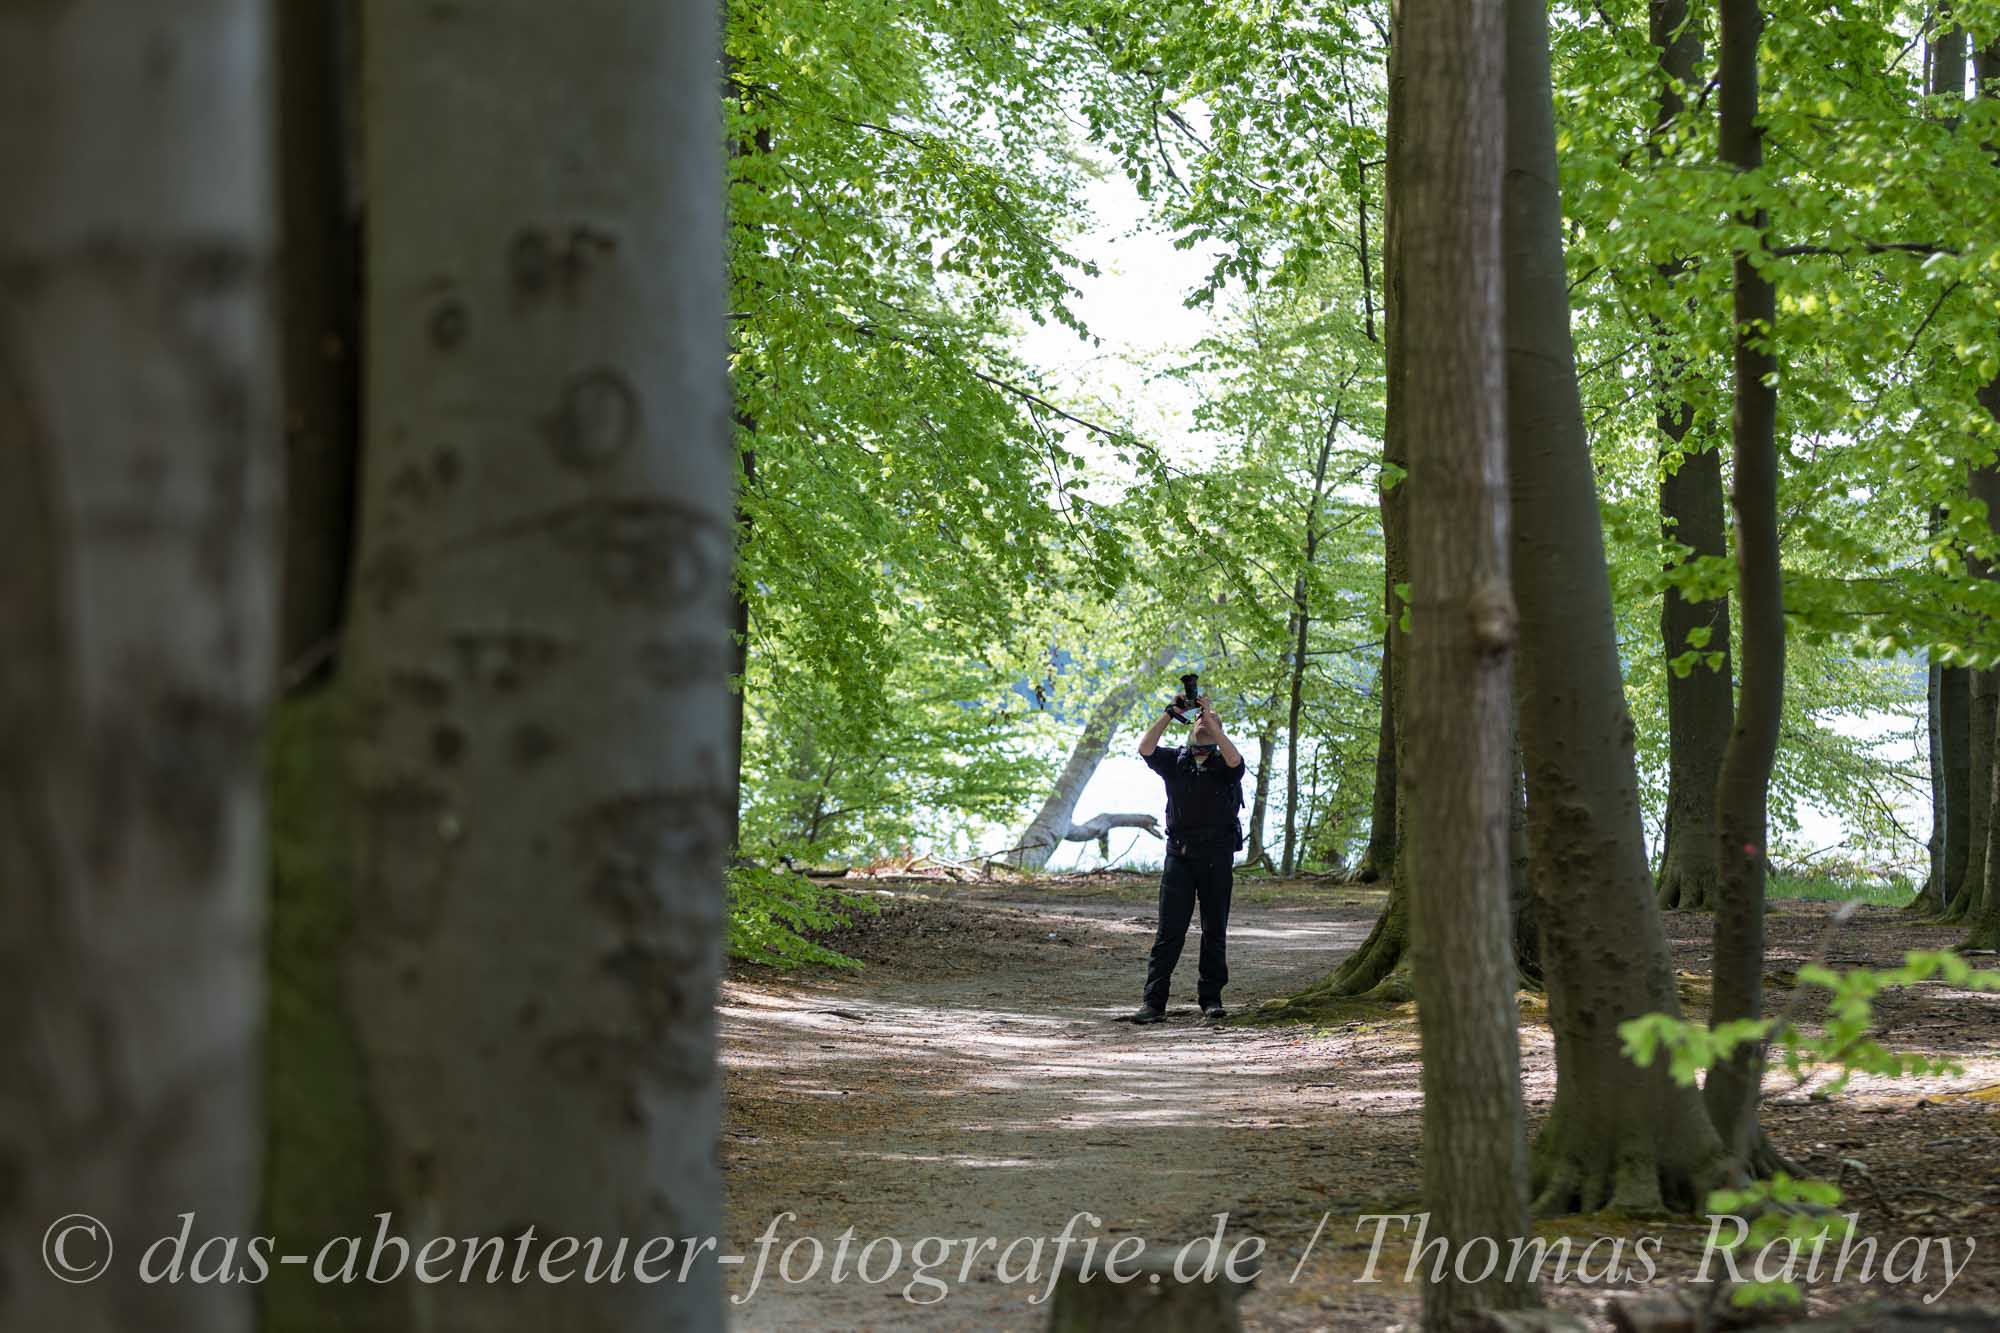 Naturfotografie am Werbellinsee im Barnimer Land in Brandenburg